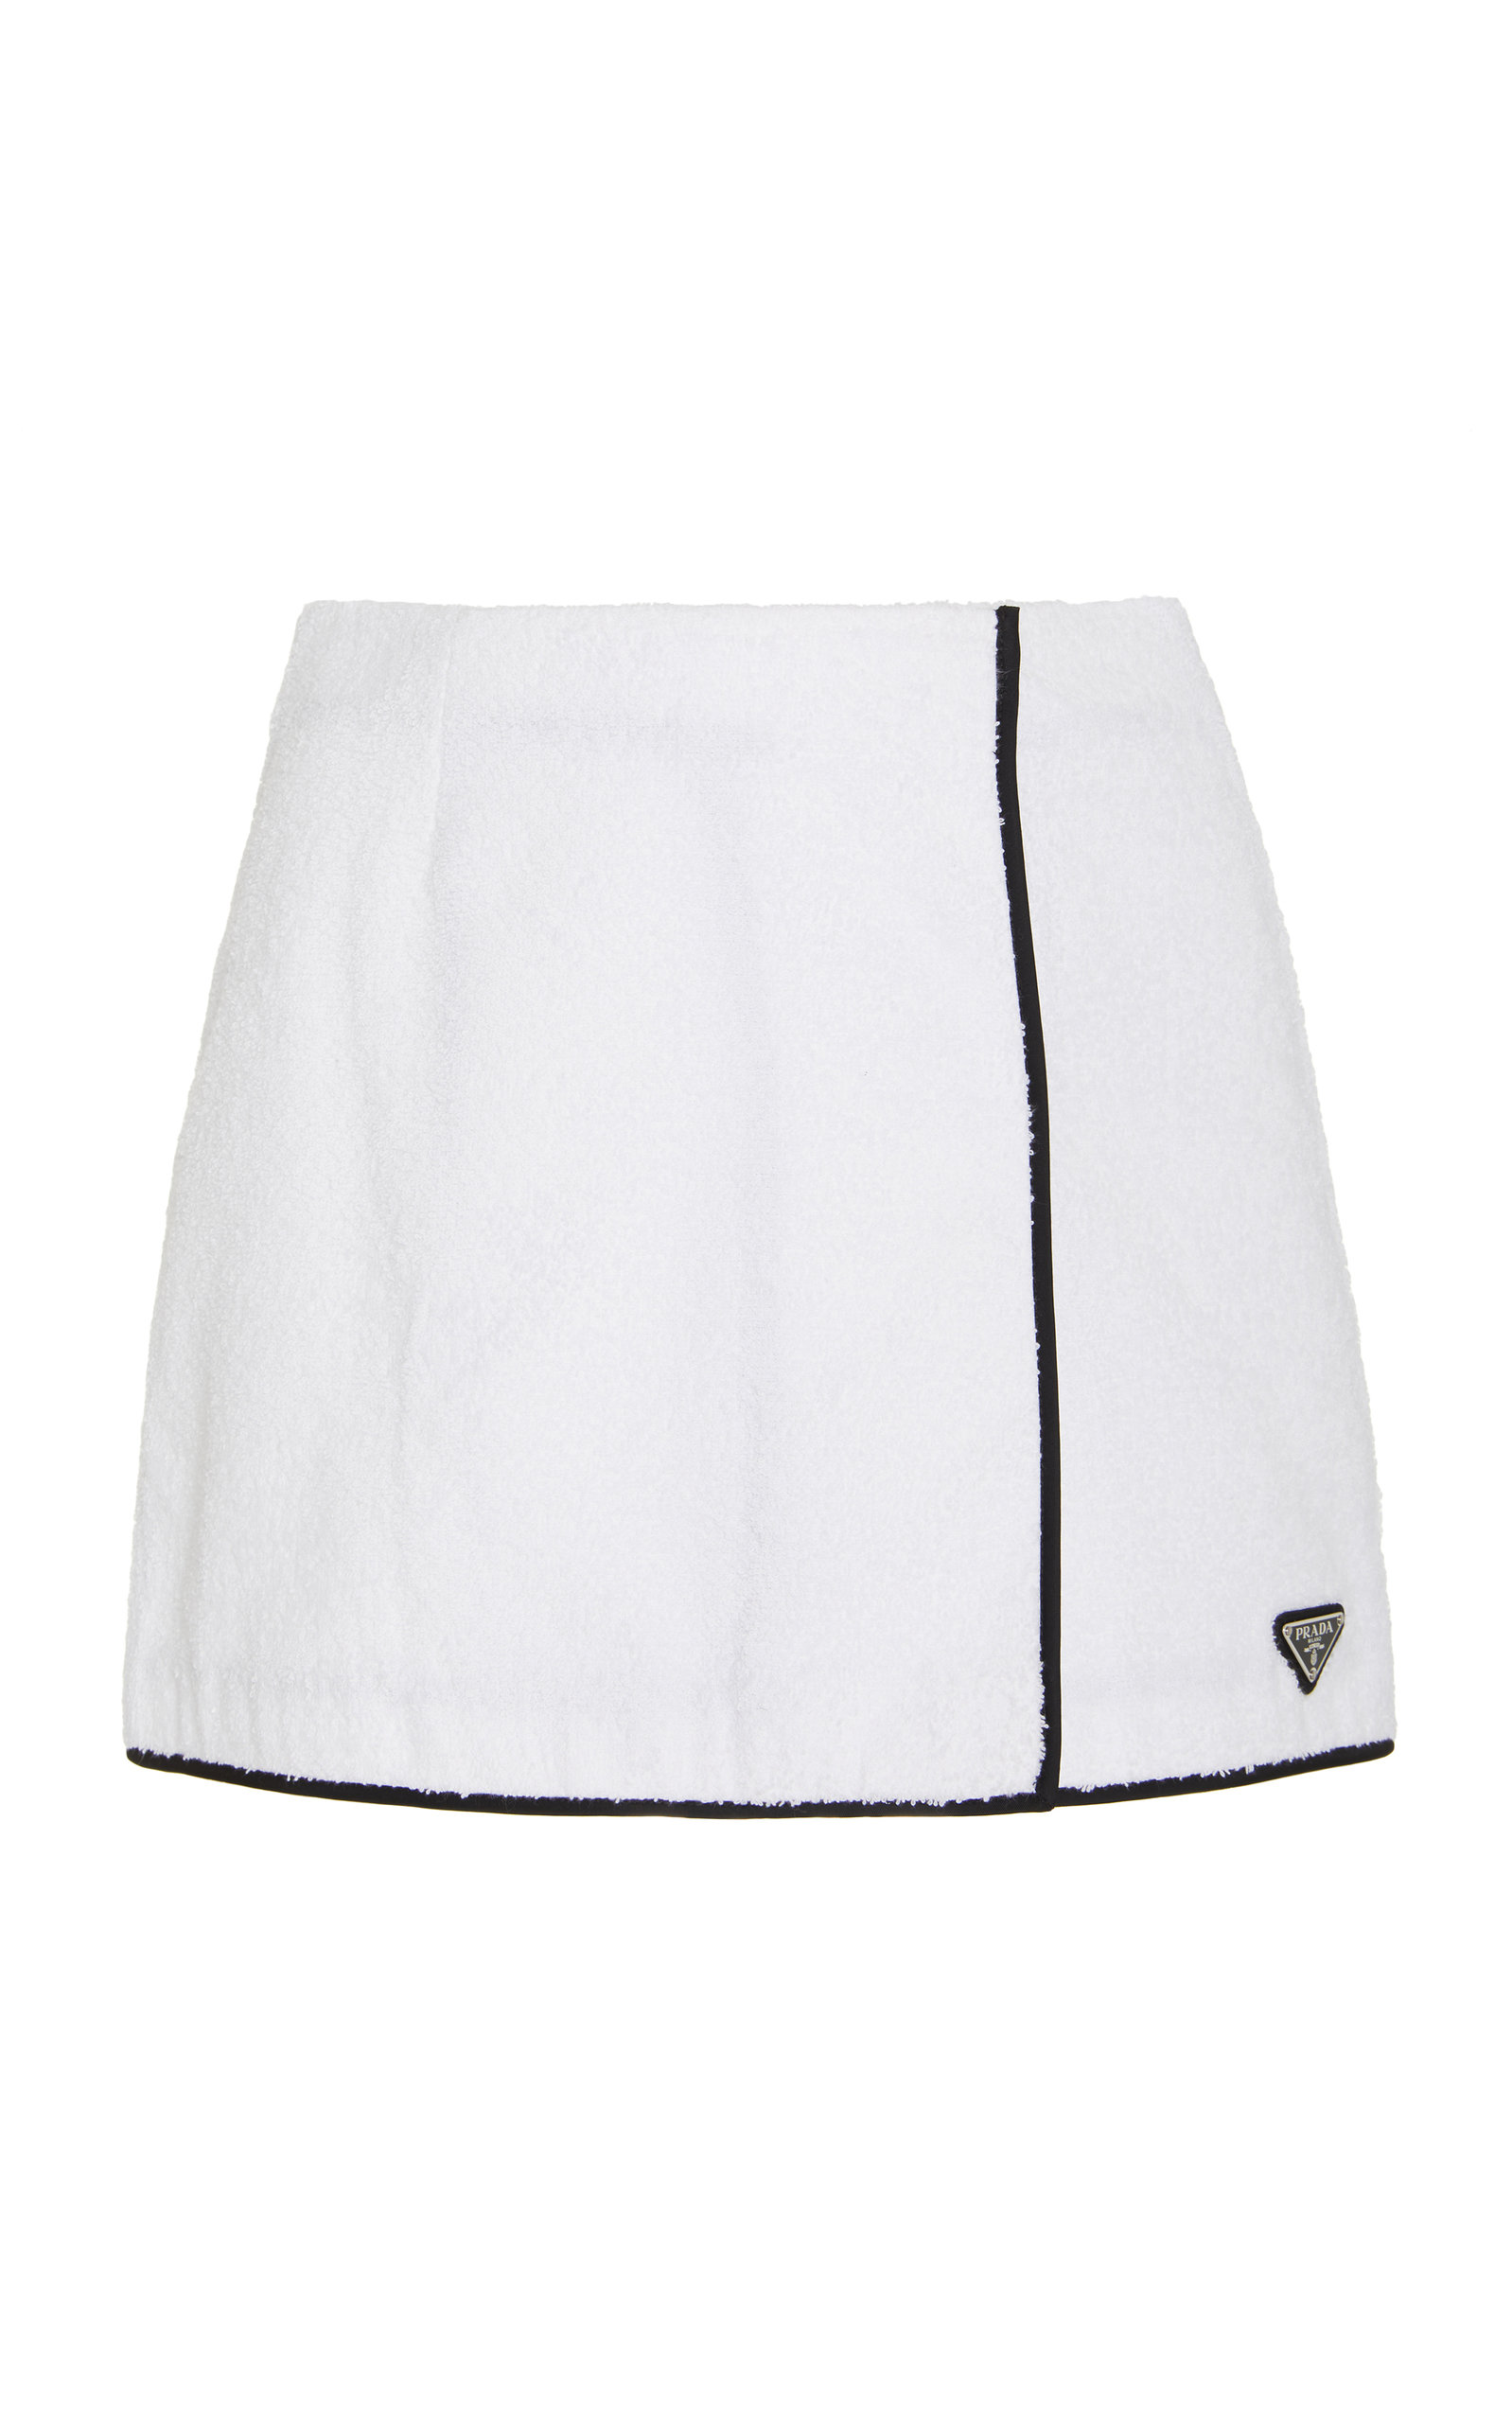 Prada - Cotton Terrycloth Mini Skirt - White - IT 38 - Moda Operandi